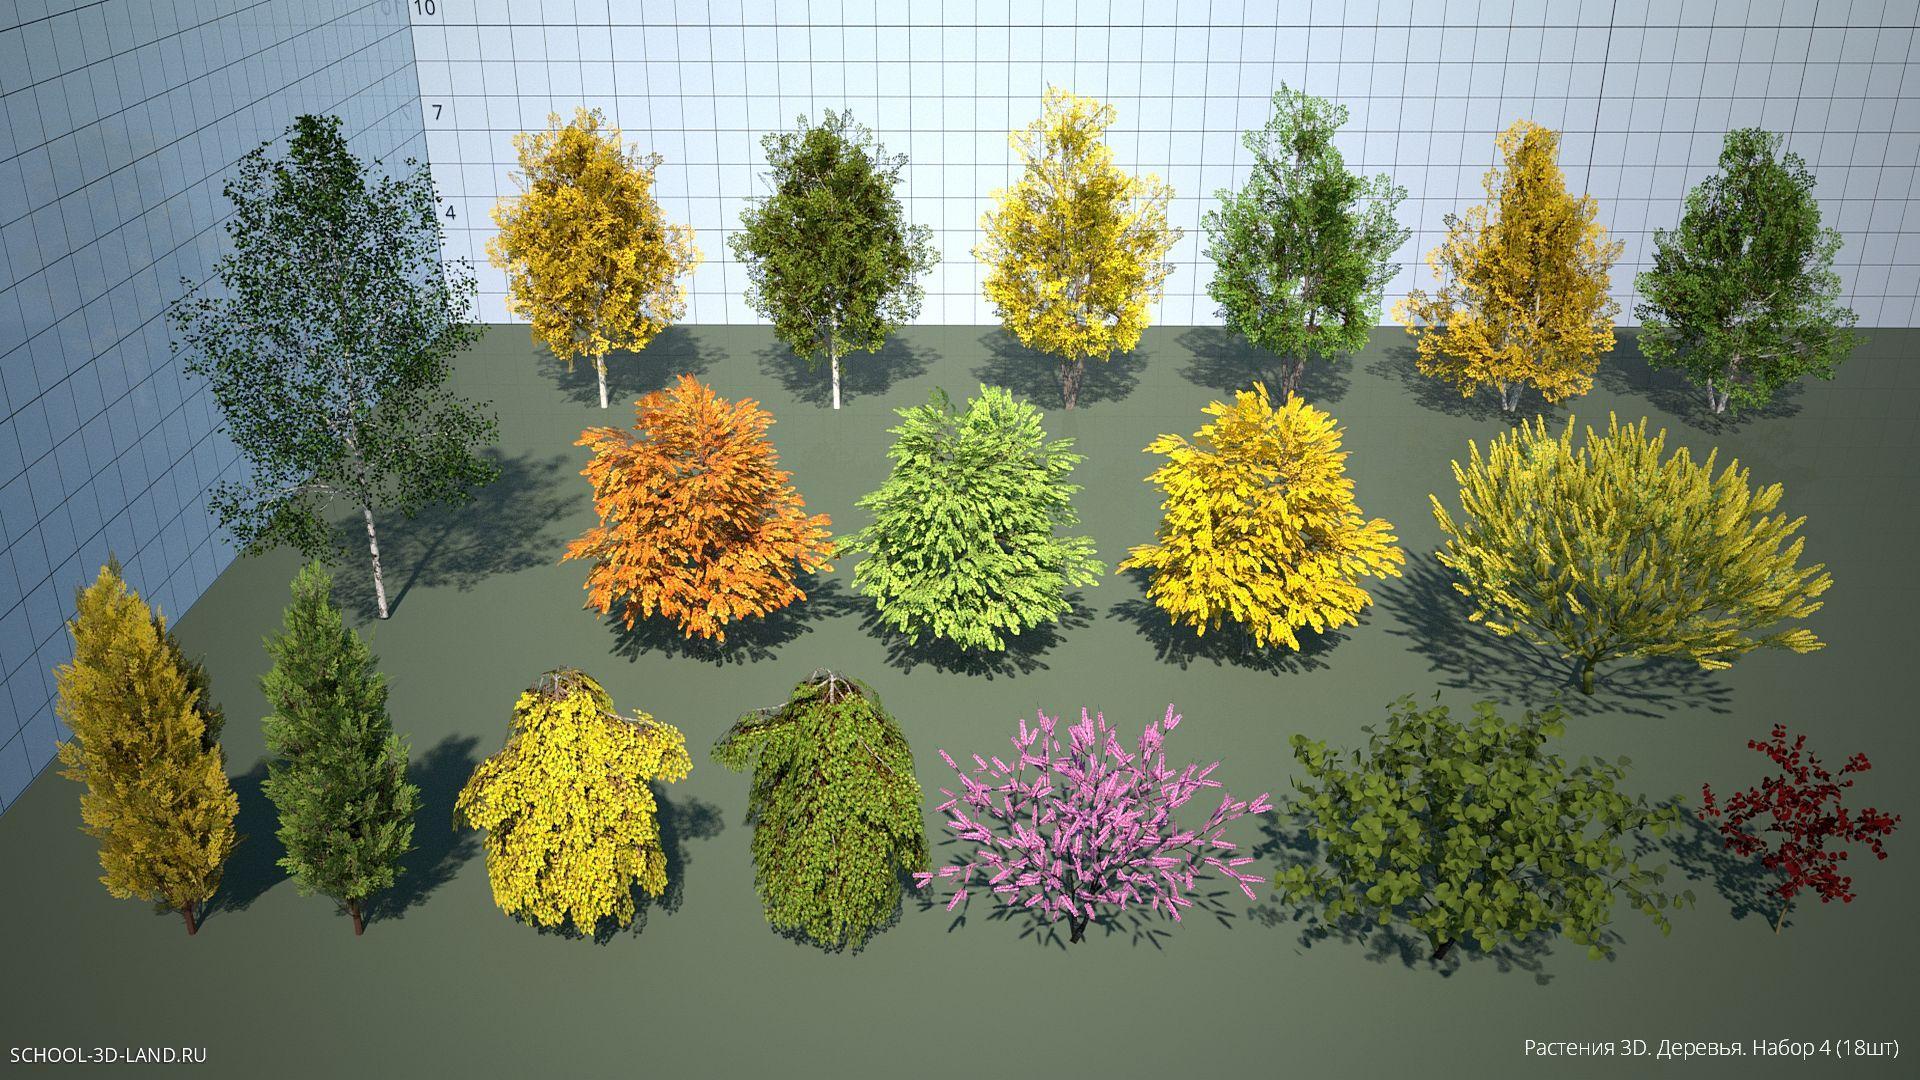 Растения 3D. Деревья. Набор 4 (18шт)